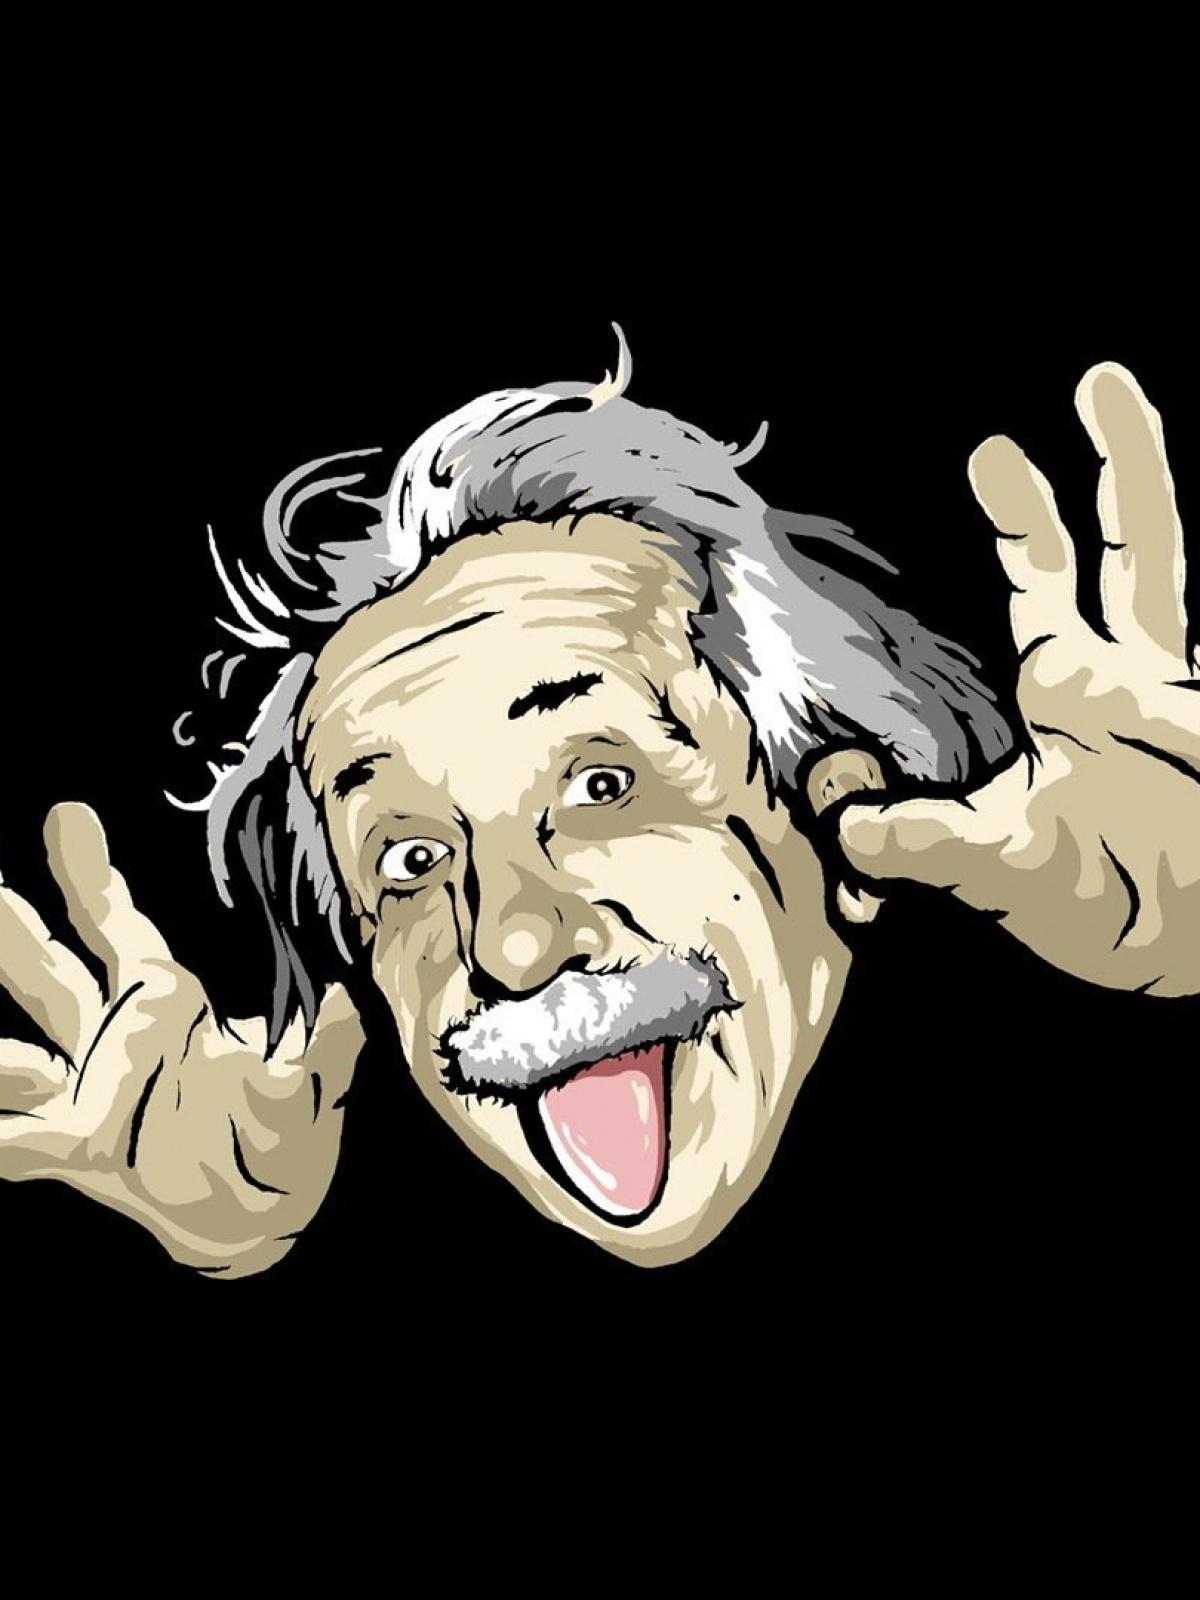 Albert Einstein Mobile Wallpaper